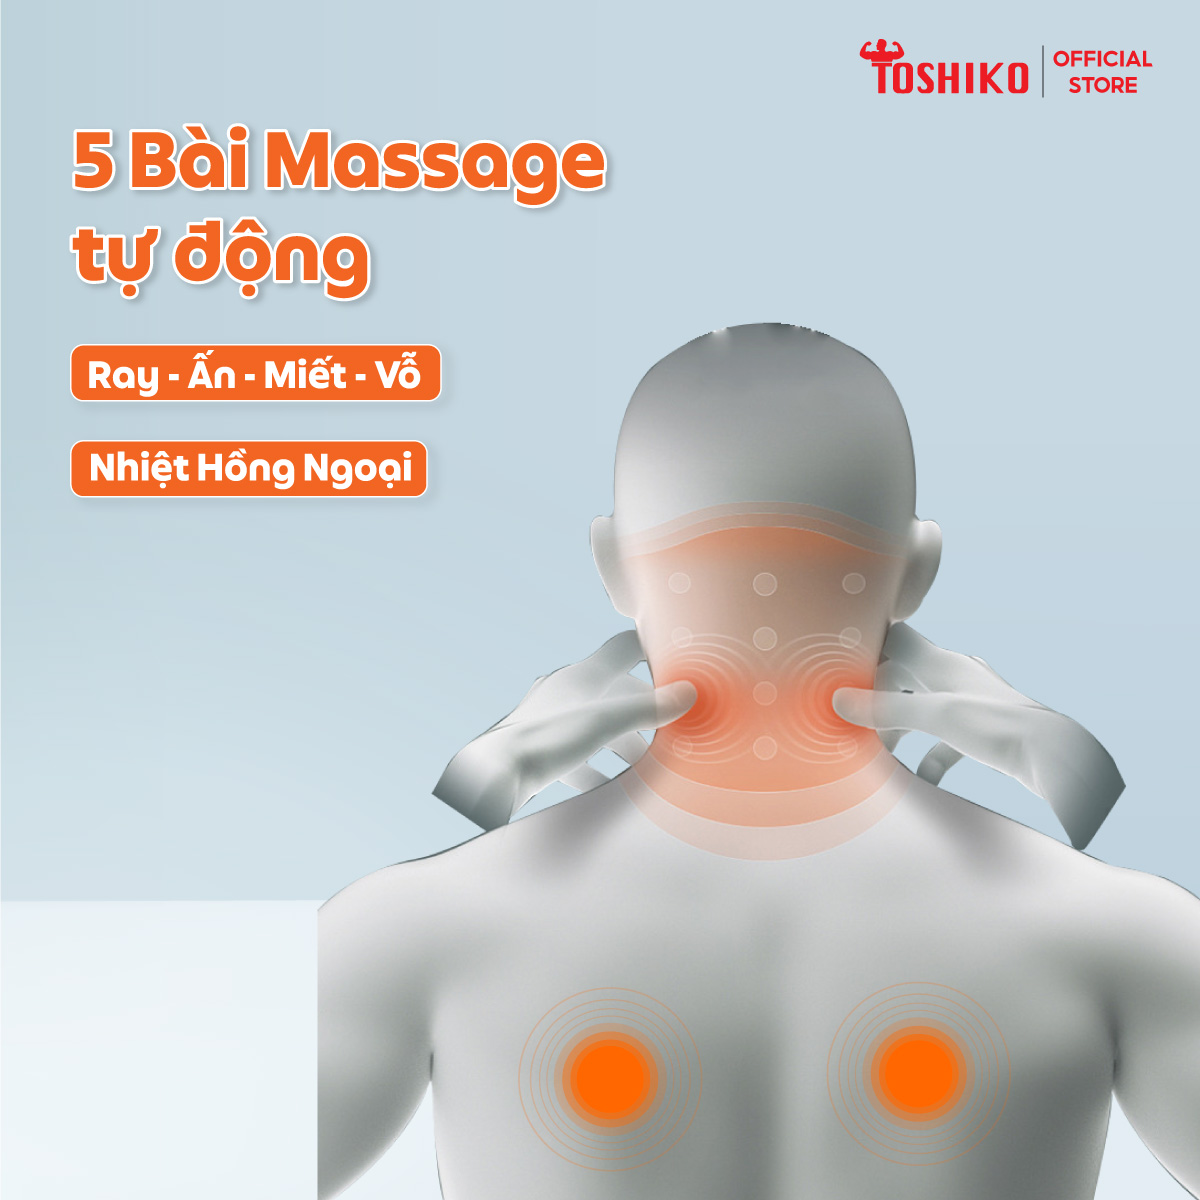 [Toshiko giao hàng] Ghế massage toàn thân công nghệ Nhật Bản Đa Năng Toshiko T6, sở hữu con lăn 3D cải tiến giúp massage đa chiều, đa dạng các bài massage khác nhau